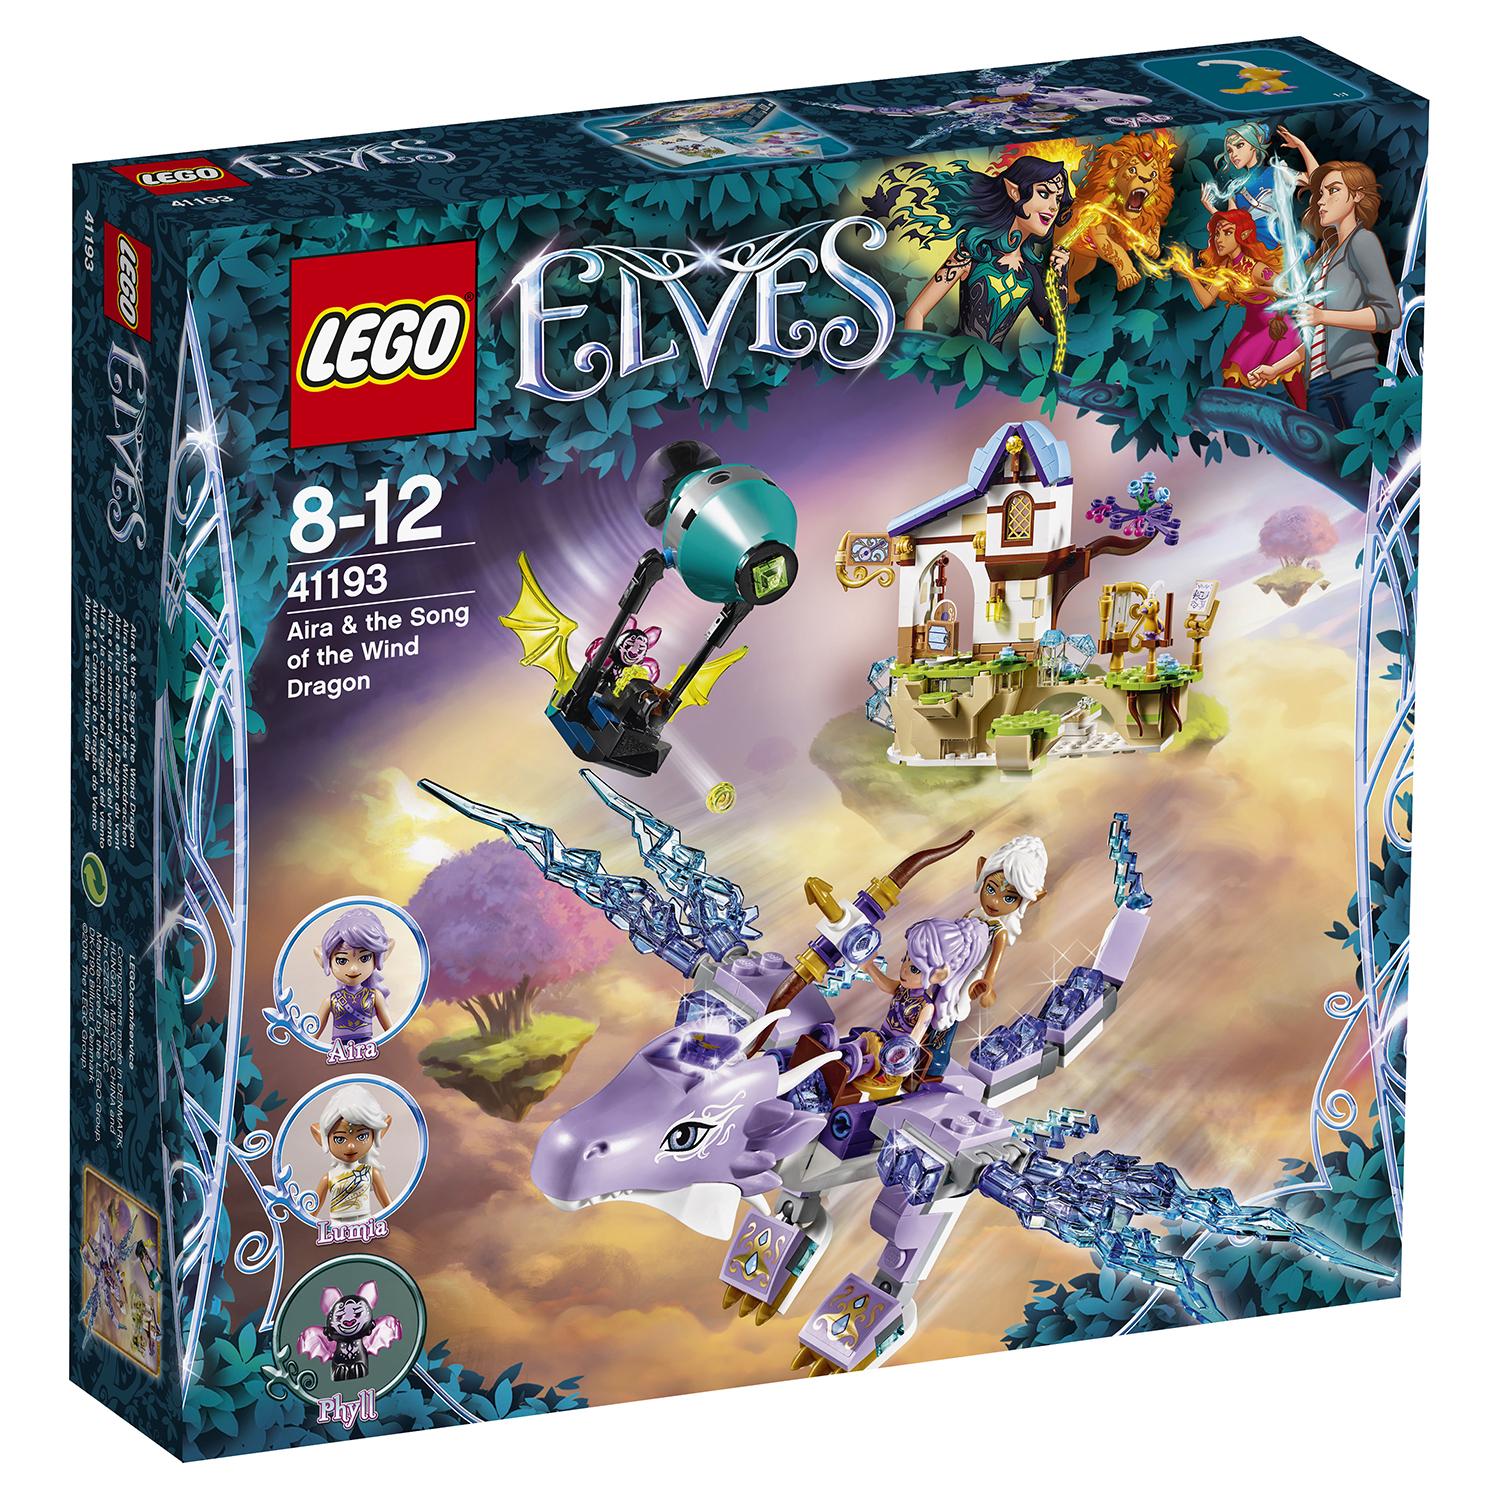 Lego Elves 41193 Эйра и дракон Песня ветра